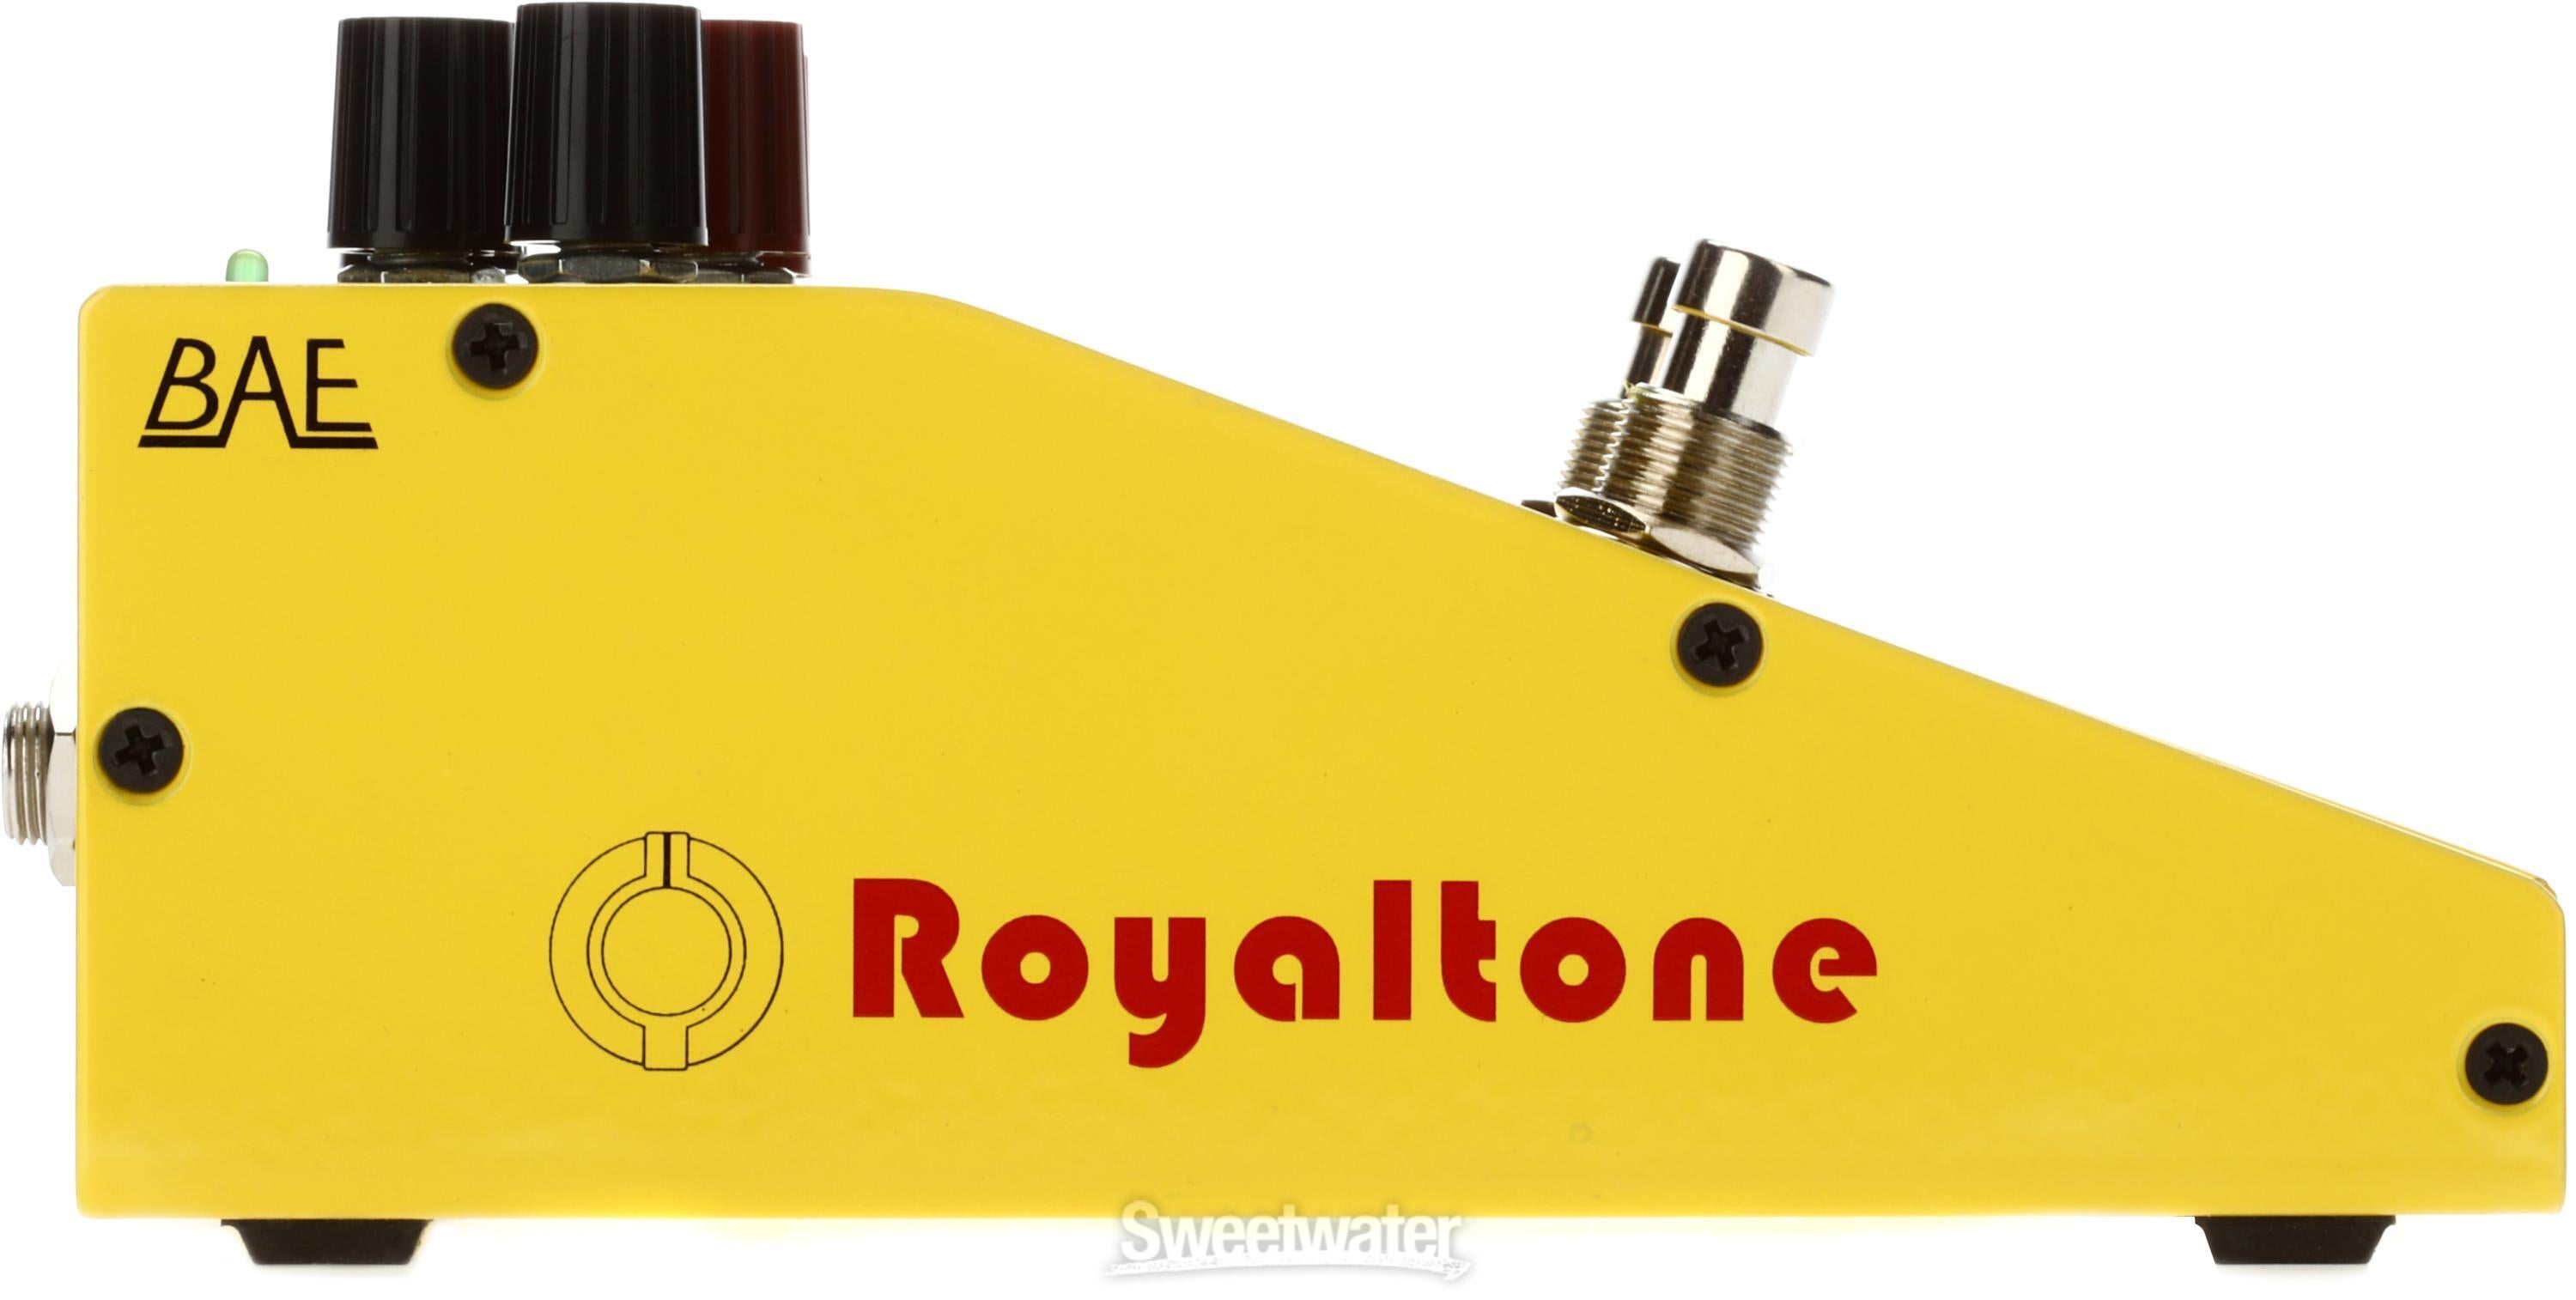 BAE Royaltone Fuzz Pedal | Sweetwater